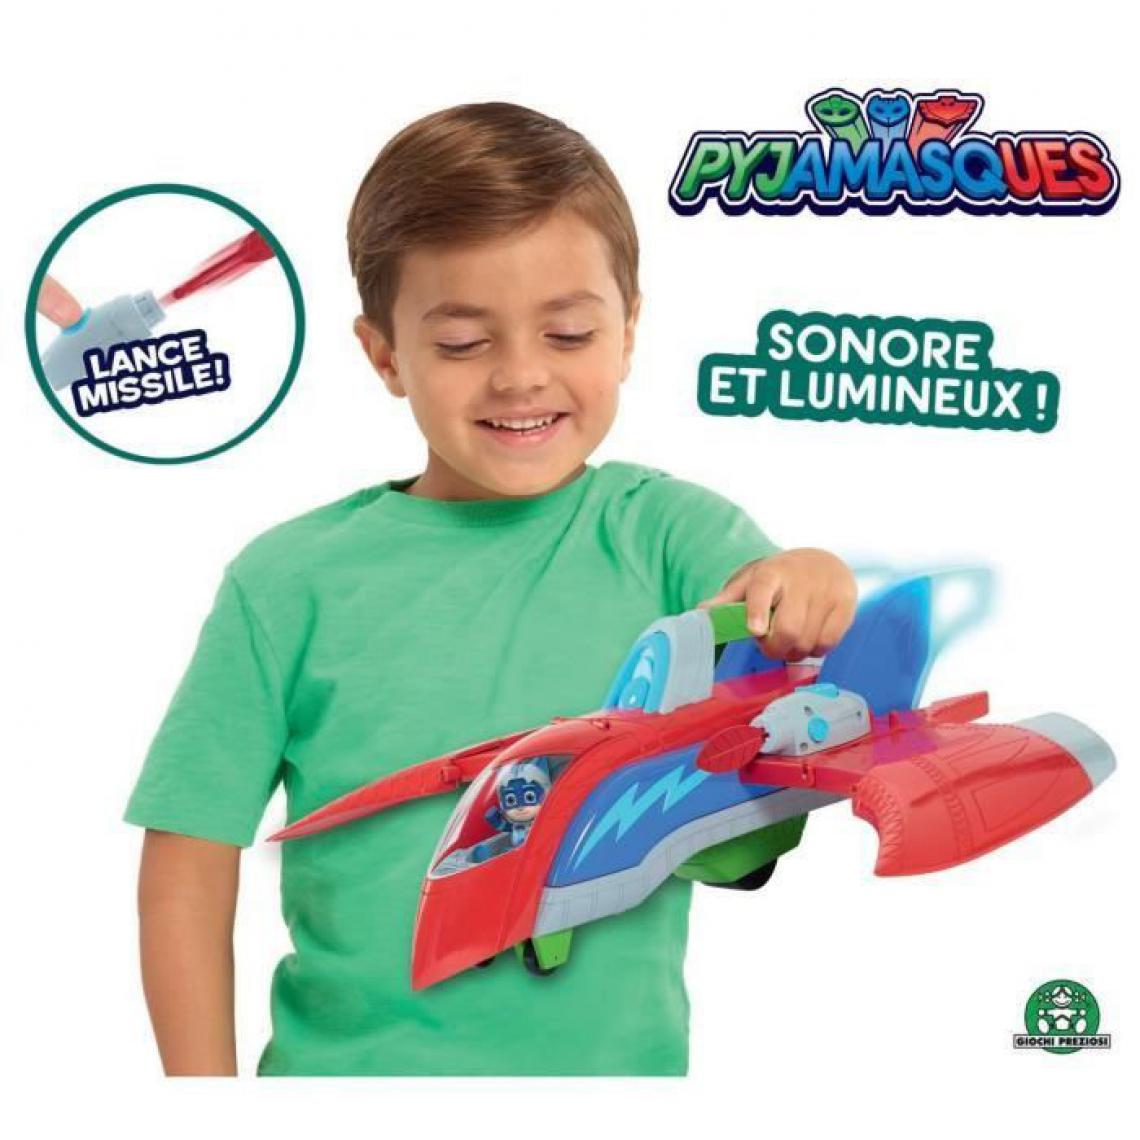 Giochi Preziosi - Pyjamasques - Rescue Jet avec 1 figurine 7,5 cm Sonore et Lumineux - Films et séries